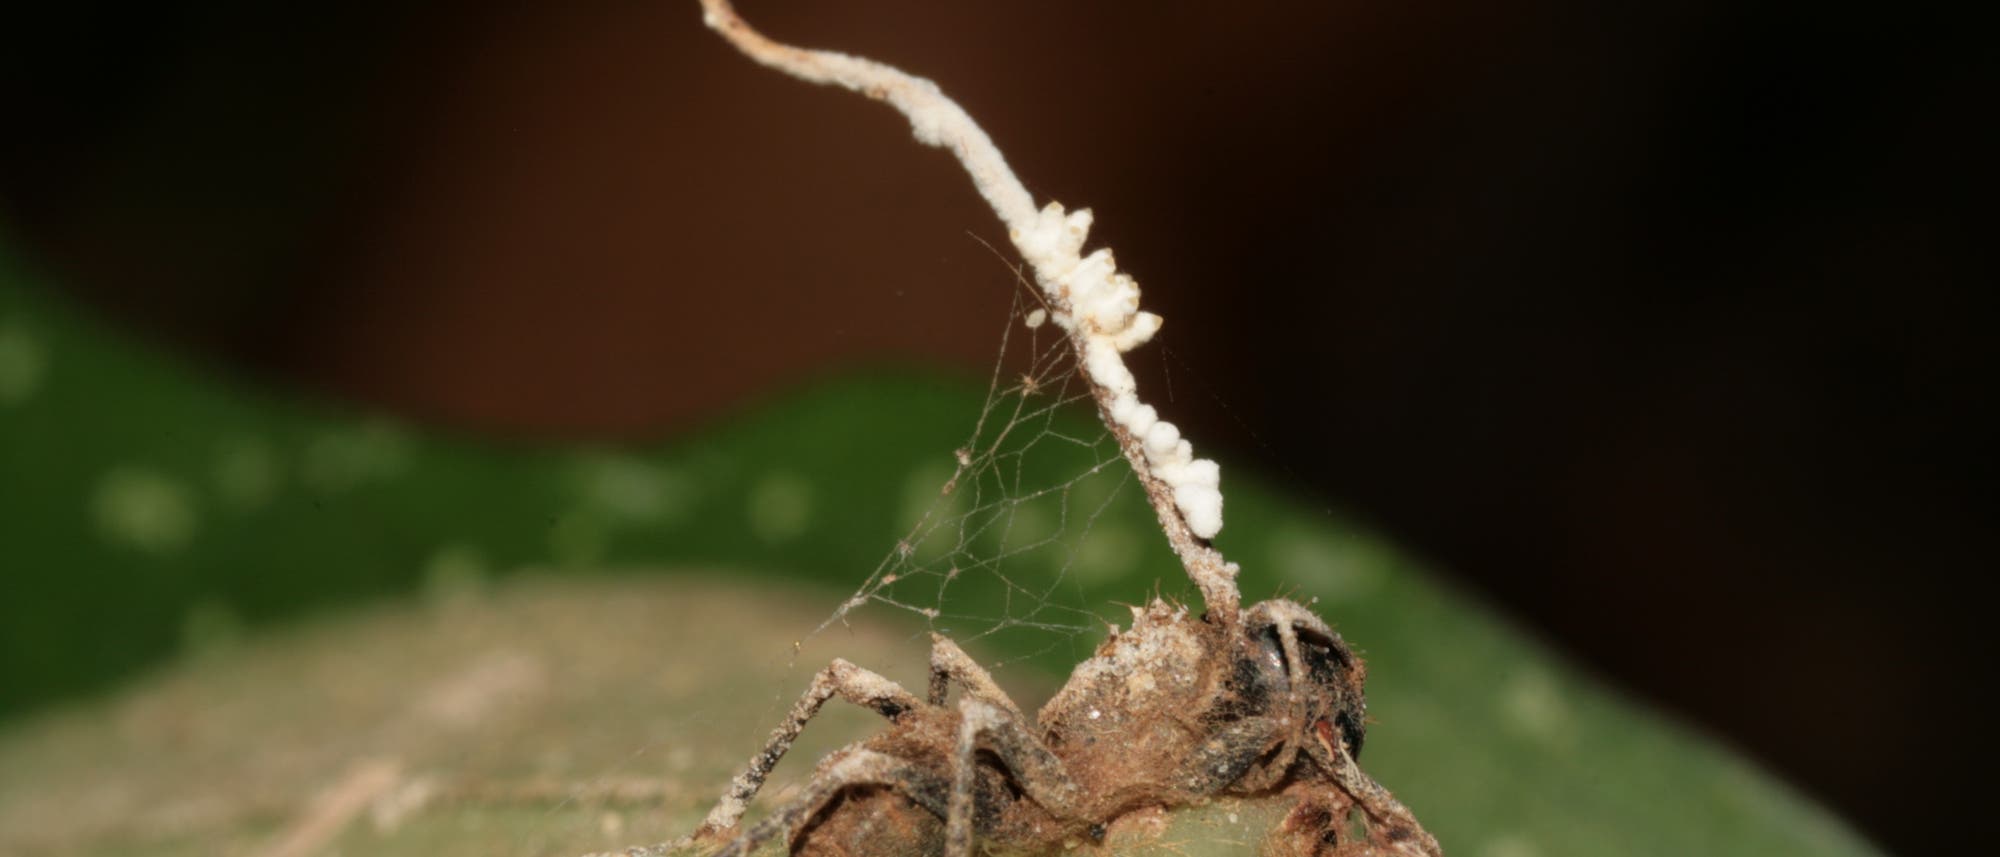 Hyperparasit liefert Seuchenschutz für Ameisenkolonien